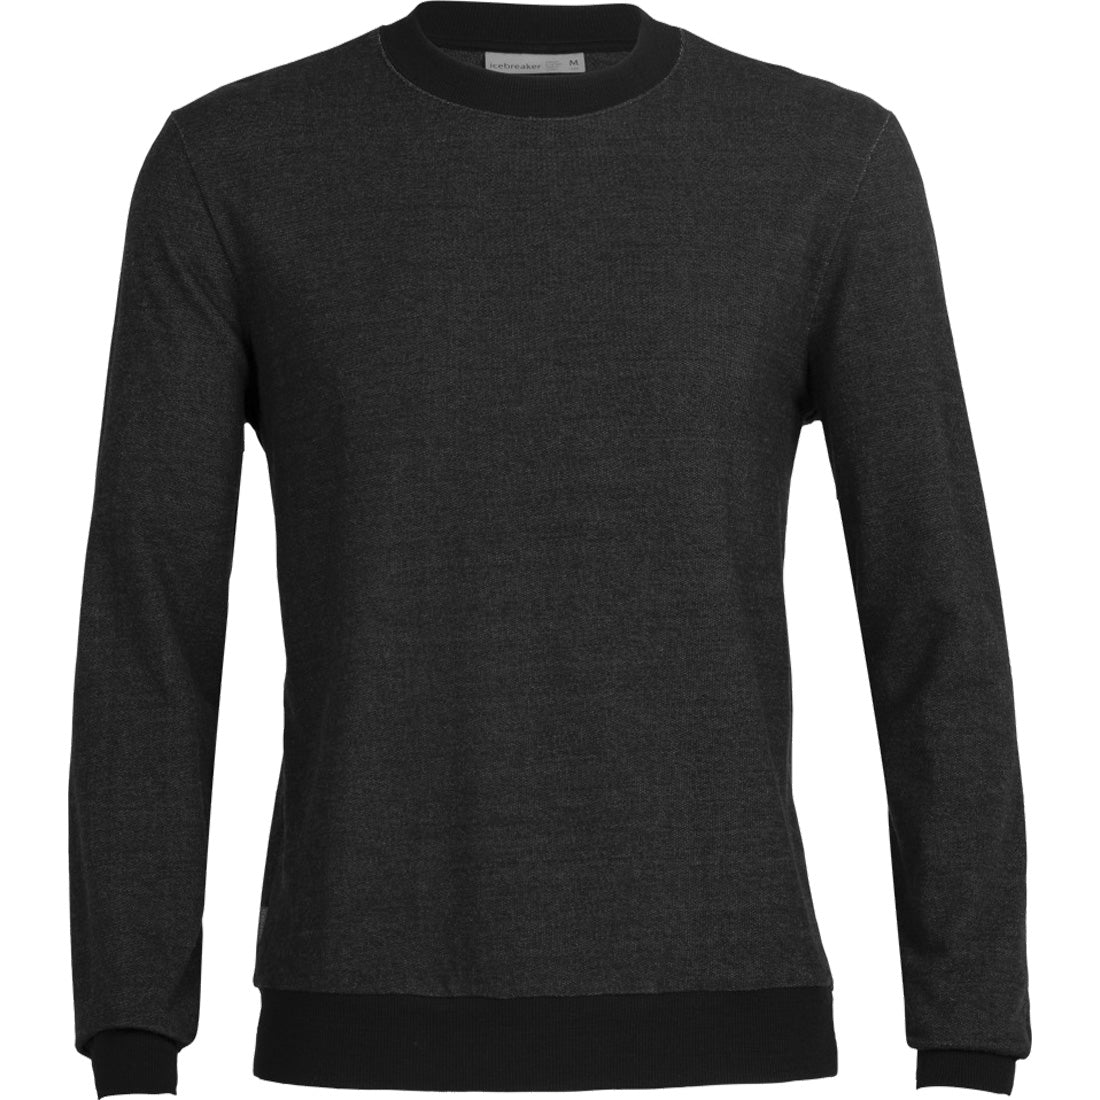 Icebreaker Merino Central Sweatshirt - Men's